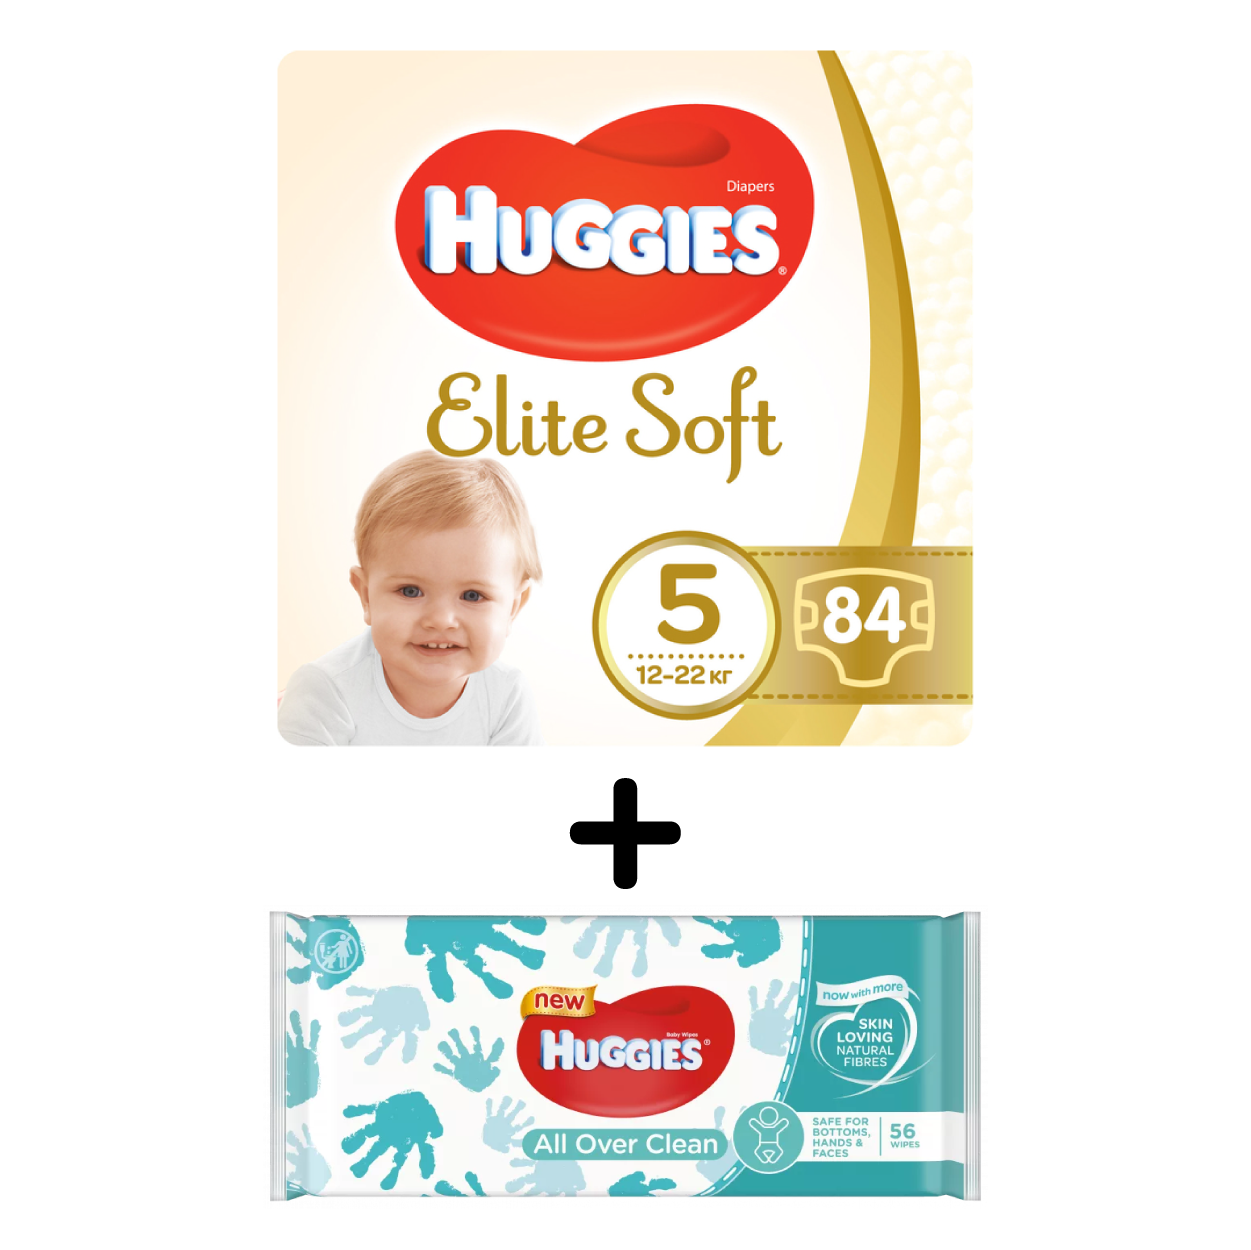 Набор Huggies: Подгузники Huggies Elite Soft 5 (12-22 кг), 84 шт. + Влажные салфетки Huggies All Over Clean, 56 шт. - фото 1